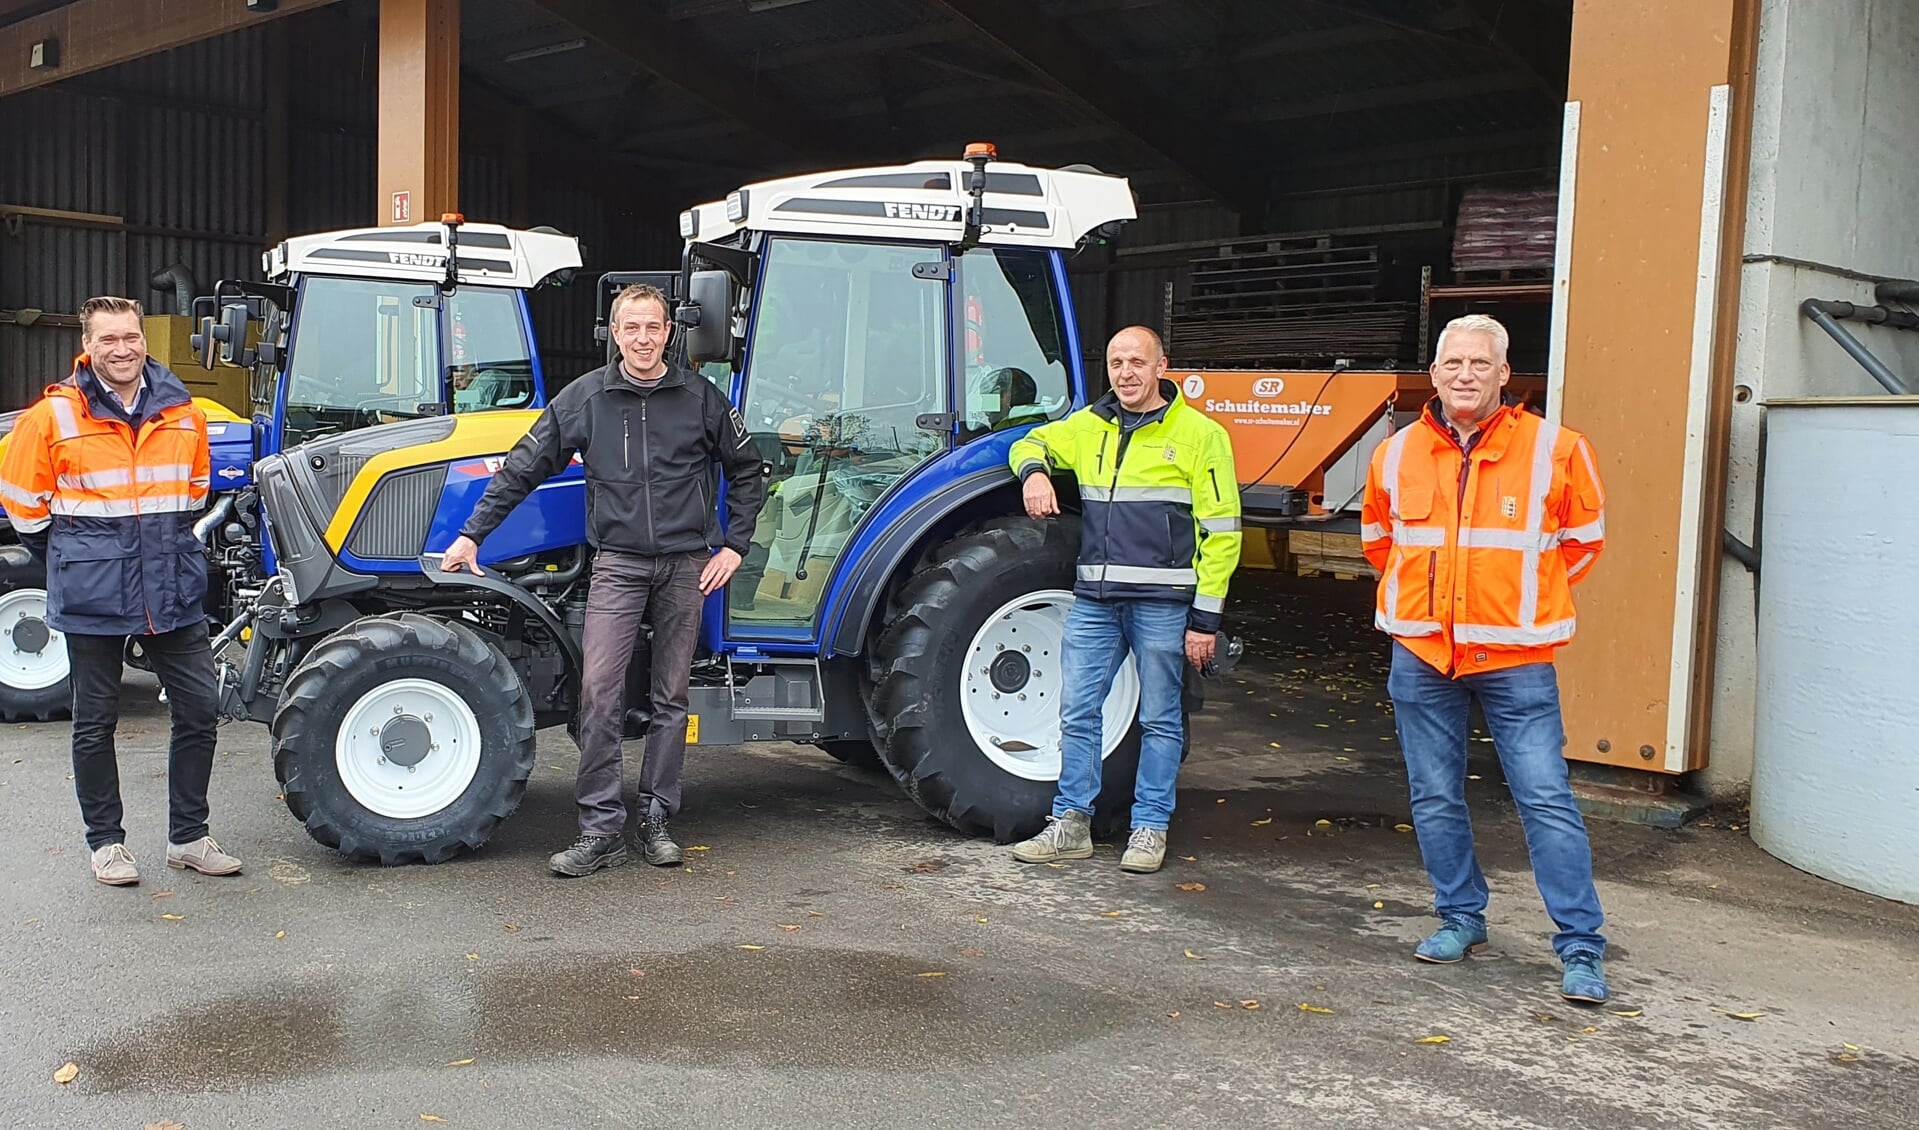 v.l.n.r. teammanager Buitendienst Stefan Brogtrop, Marcel van Dijk, Arie Koning en Ruud van Mourik, trots op de nieuwe tractoren voor Gemeente Houten.